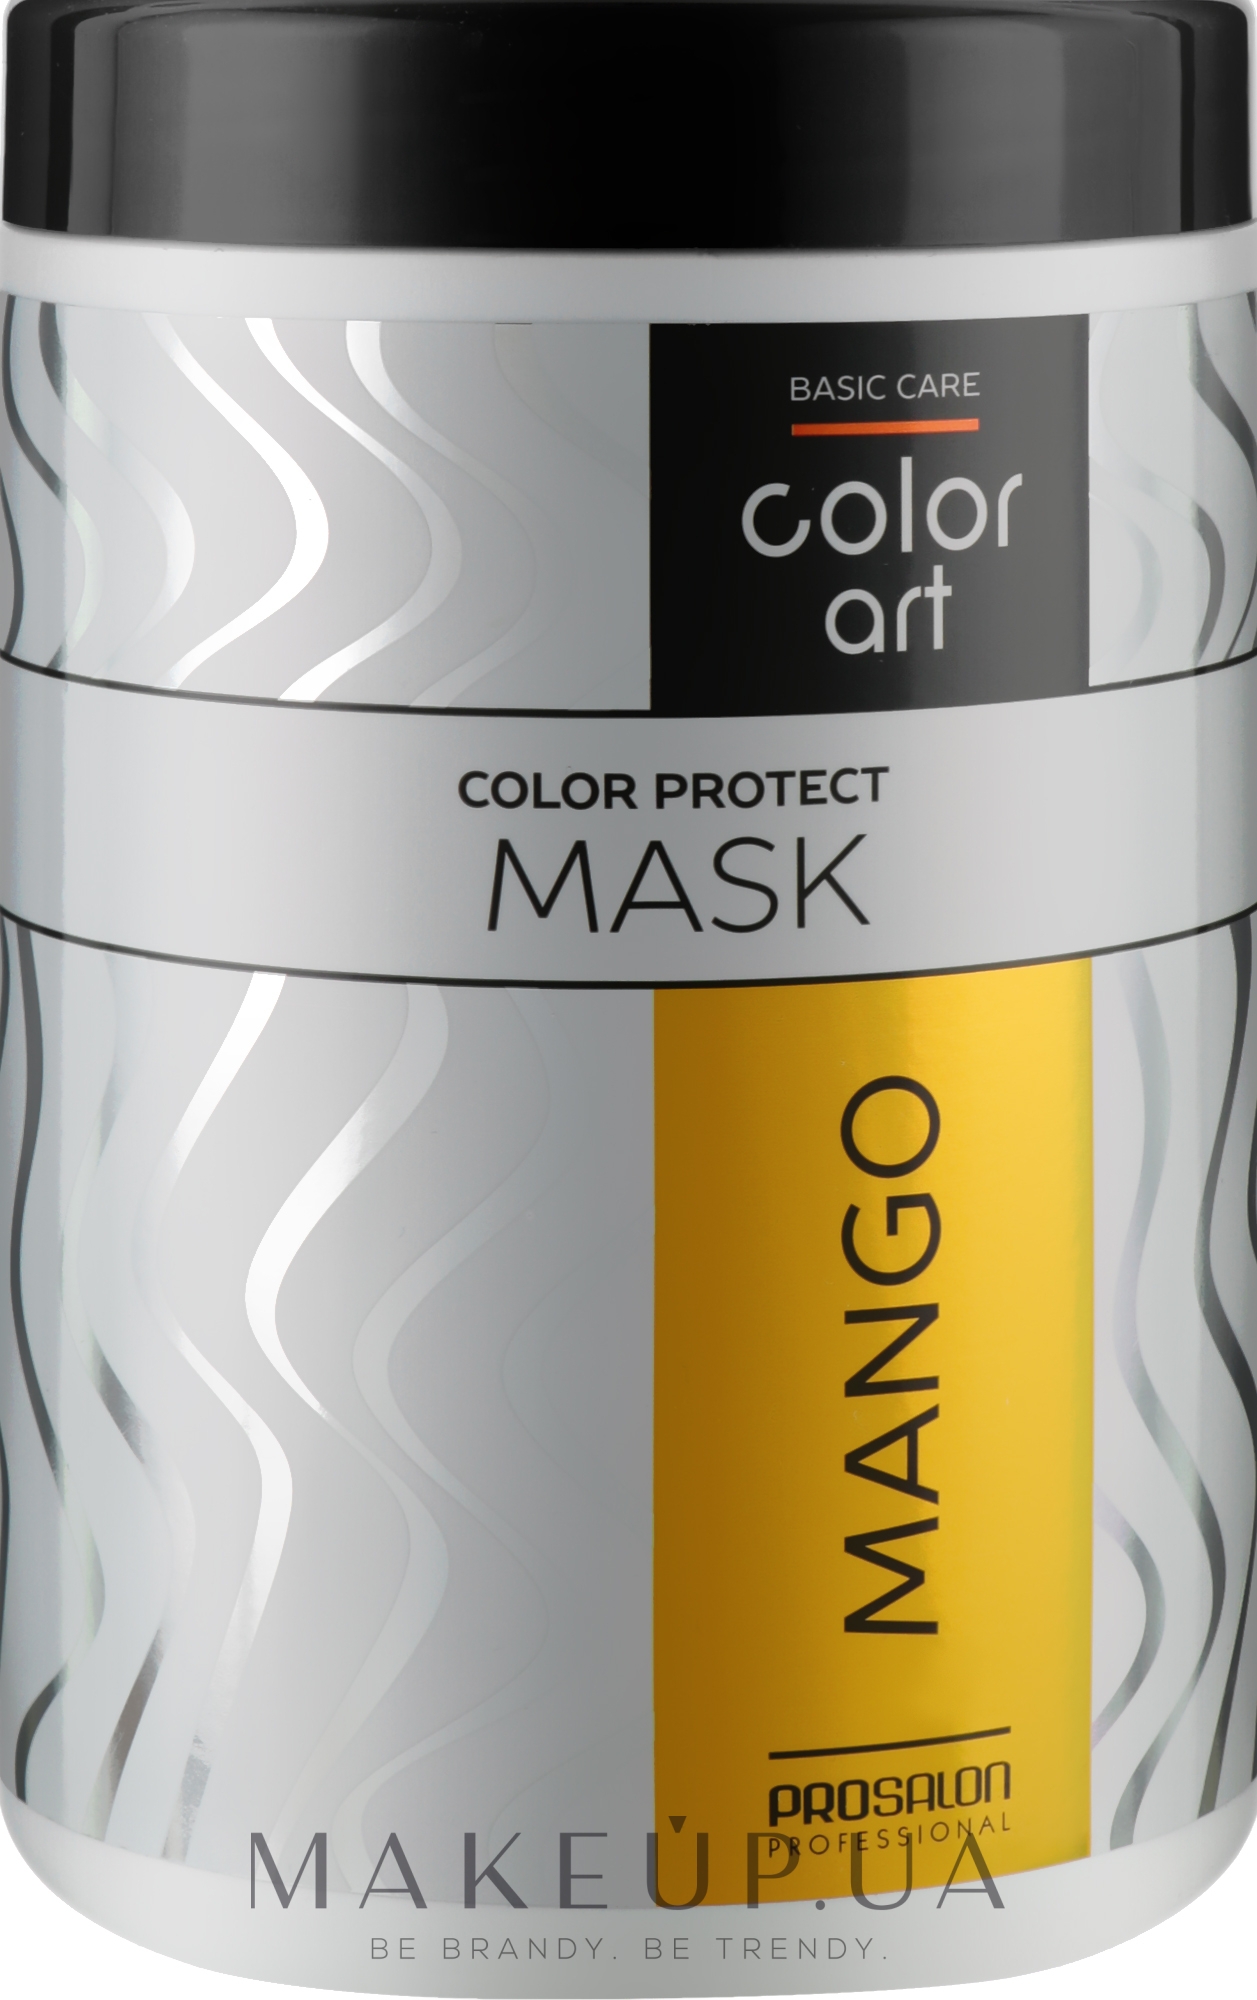 Маска для поддержания цвета окрашенных волос "Манго" - Prosalon Basic Care Color Art Color Protect Mask Mango — фото 1000ml